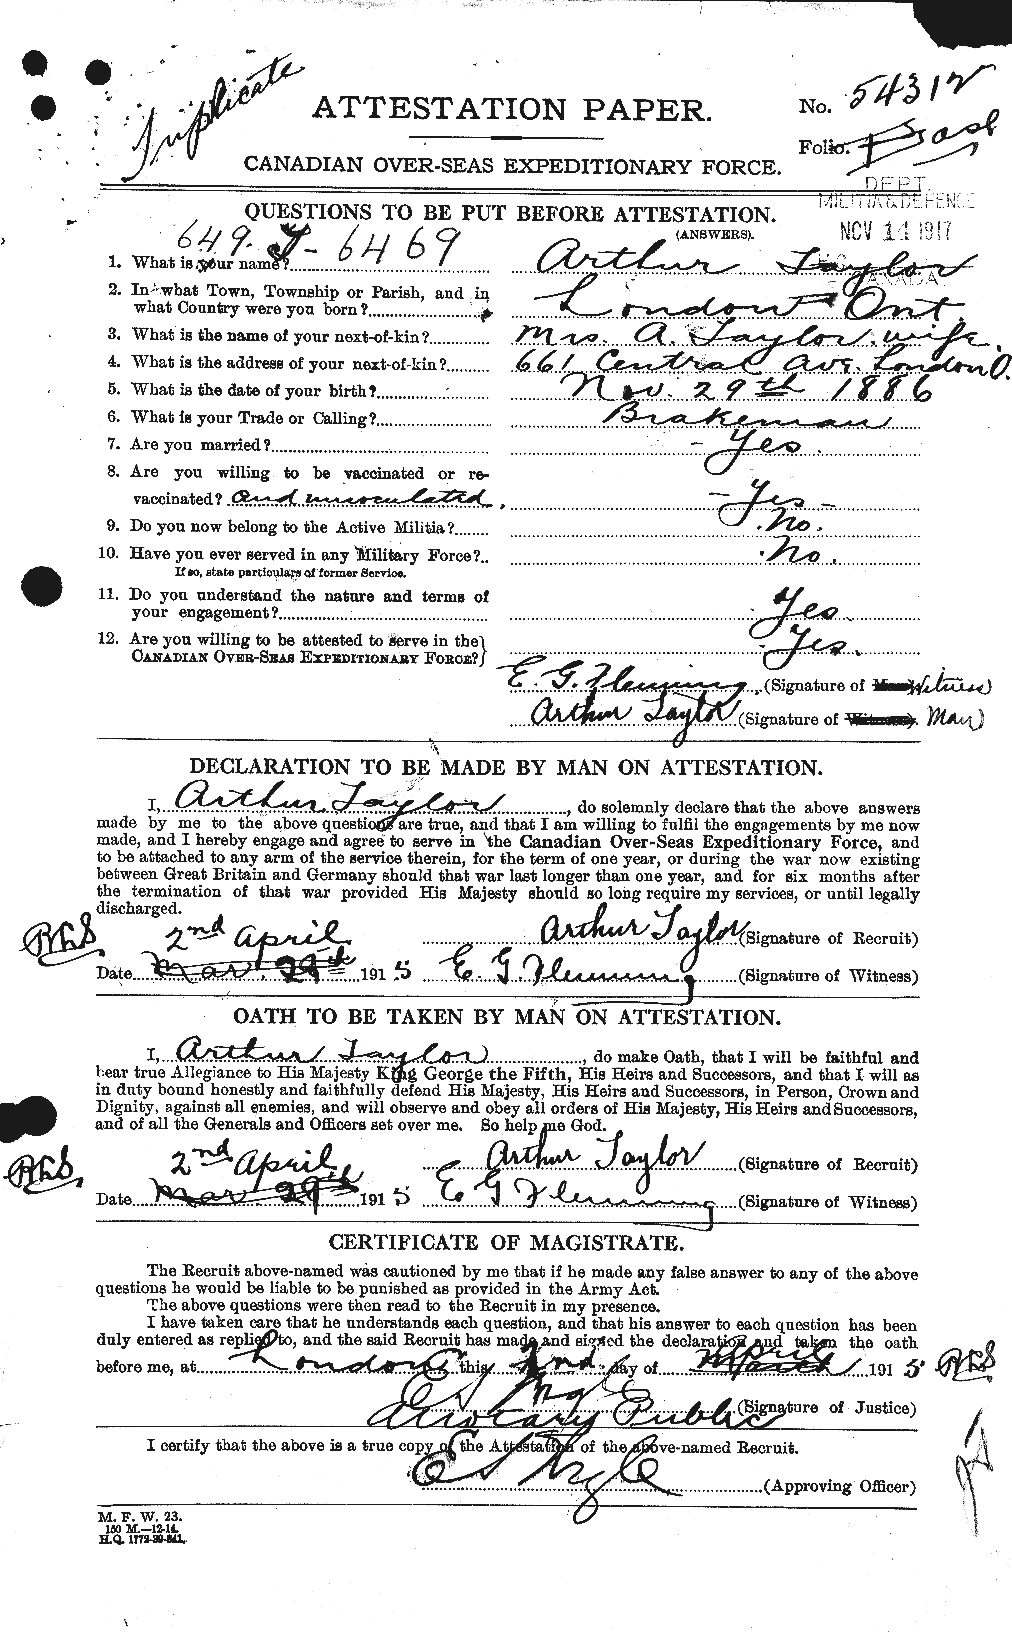 Dossiers du Personnel de la Première Guerre mondiale - CEC 626709a